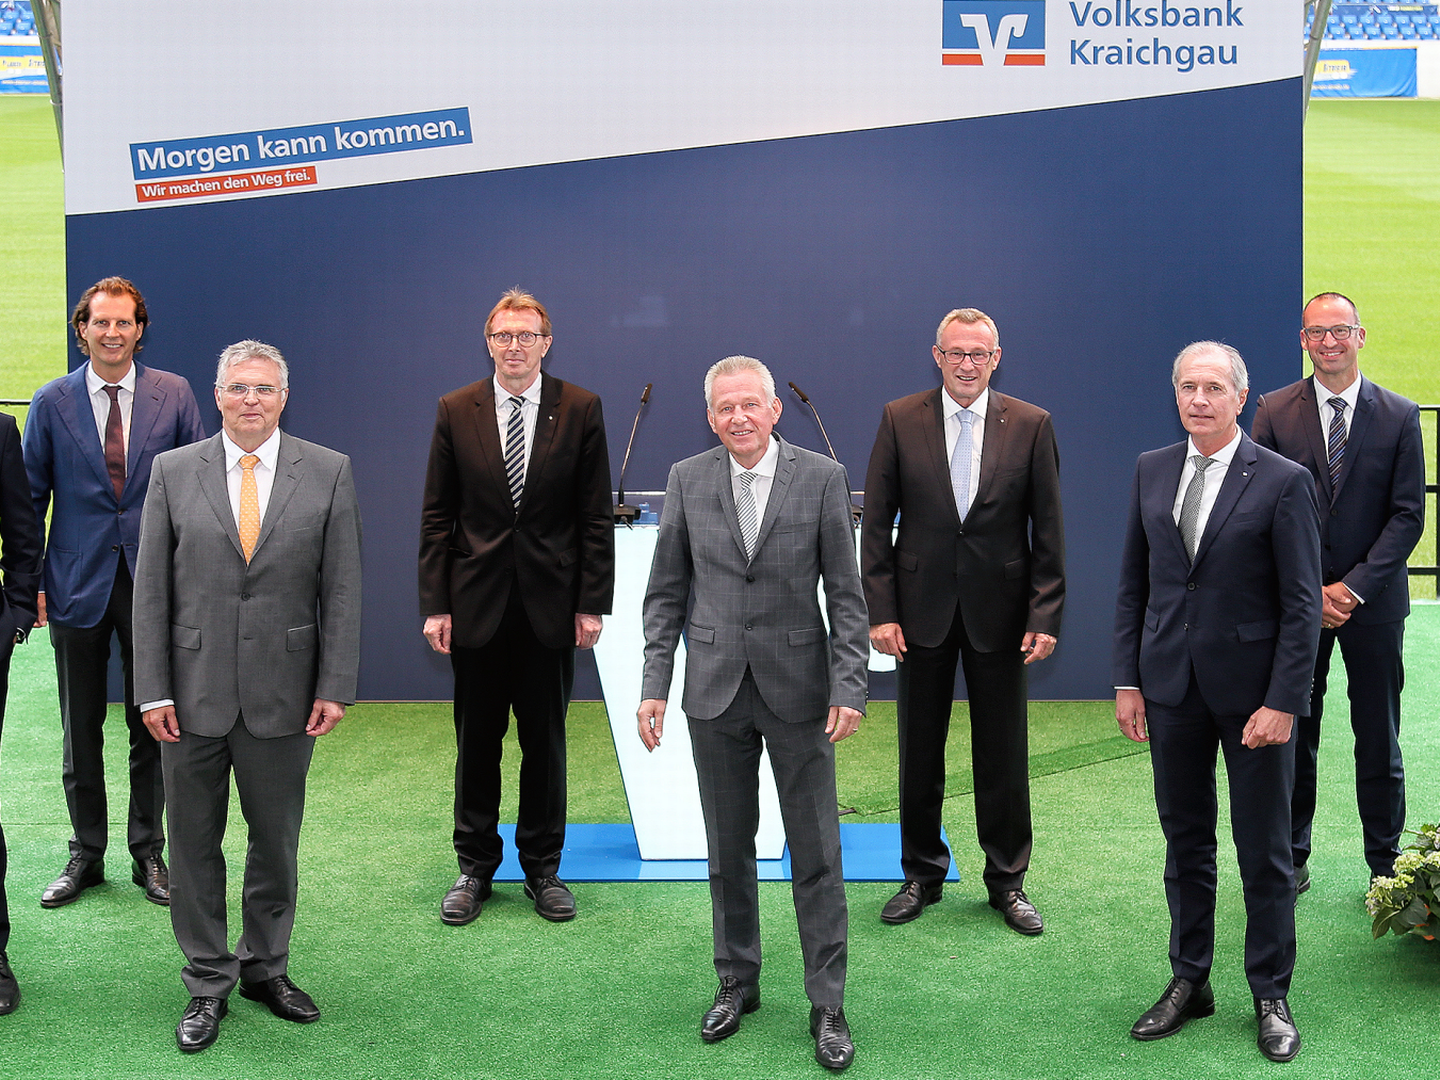 Vorstandschef Matthias Zander (fünfter von links) mit Mitgliedern des Vorstands und zwei der insgesamt 36 Aufsichtsräte. Holger Neubauer (rechts) wird ab Oktober 2021 Mitglied des Vorstands. | Foto: Volksbank Kraichgau